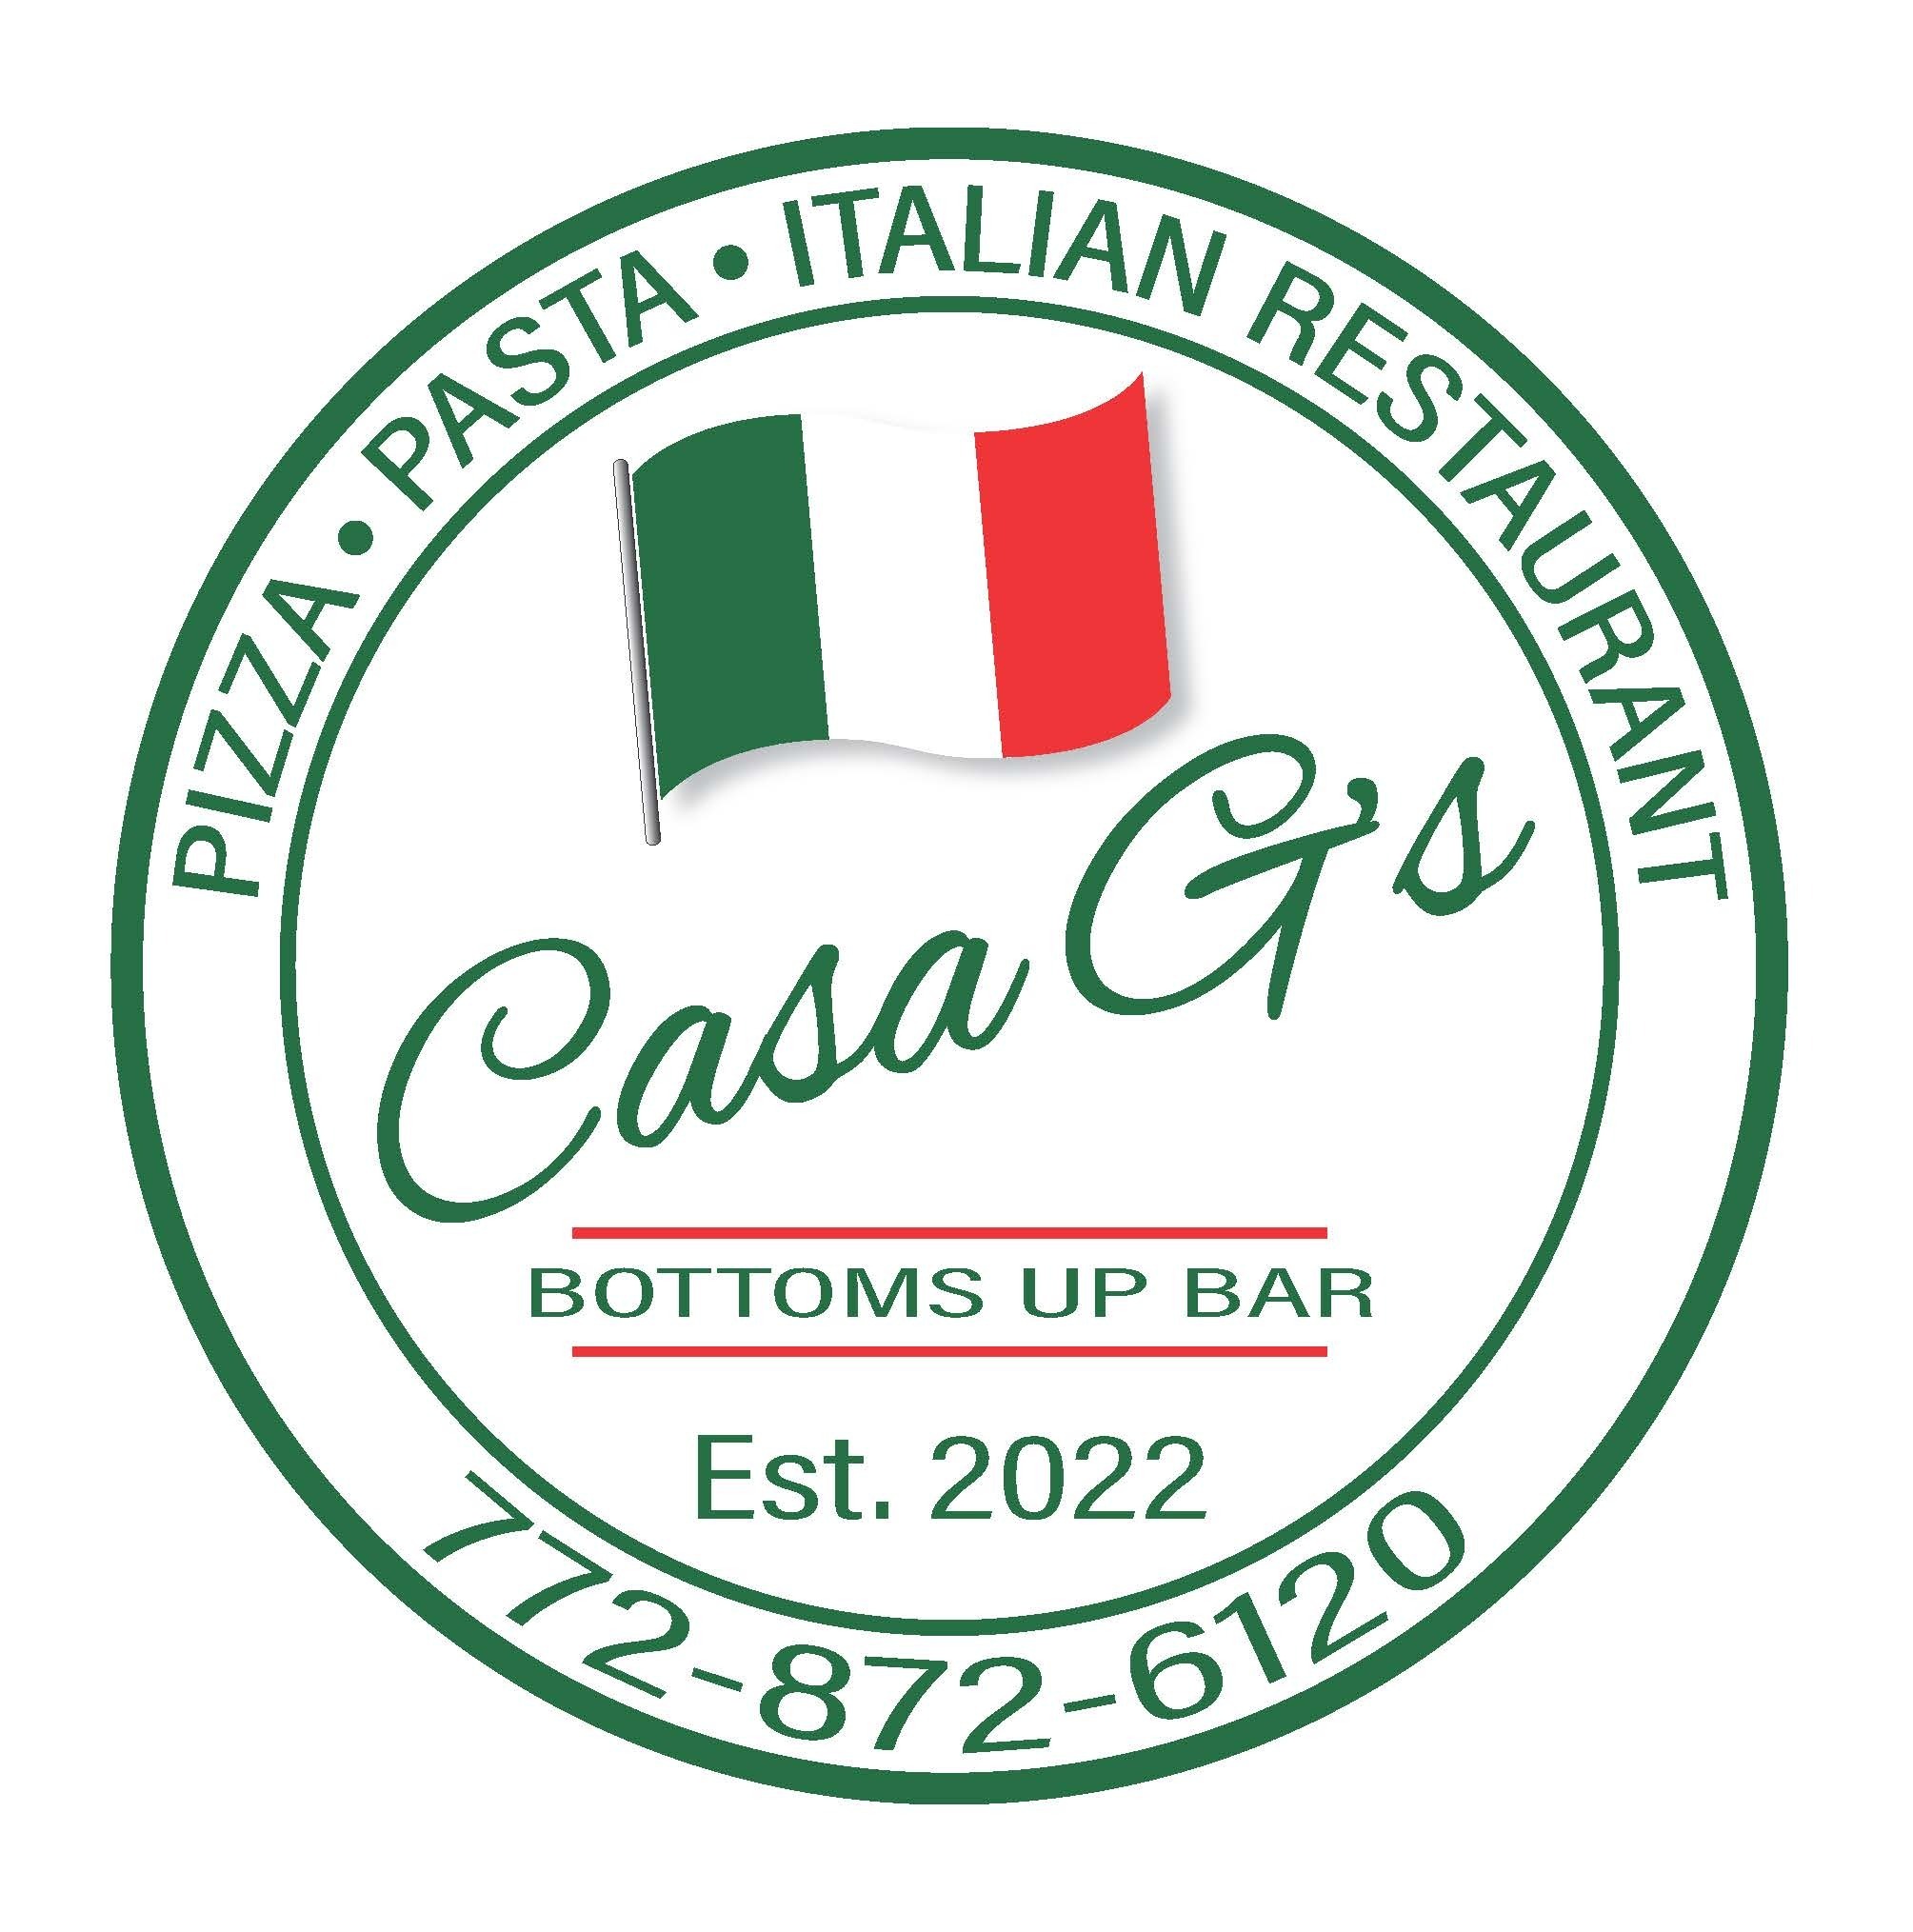 Casa G's Italian Restaurant